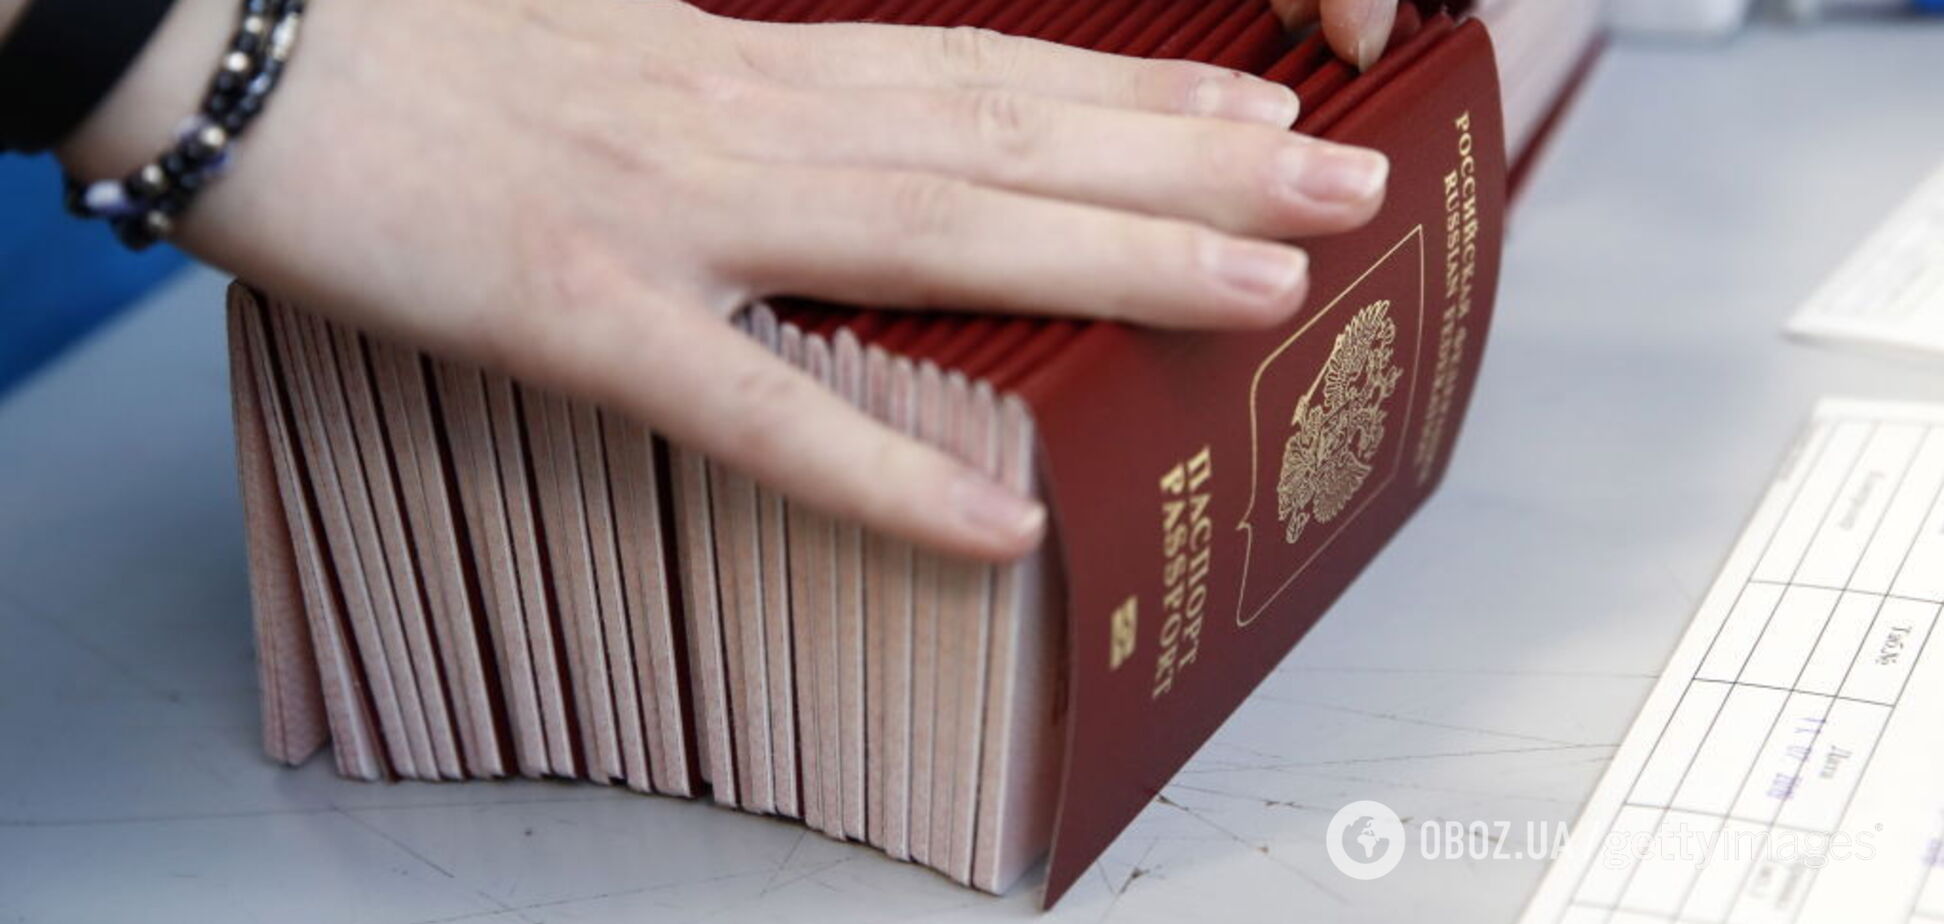 'Только Украина': Евросоюз 'отшил' путинские паспорта на Донбассе